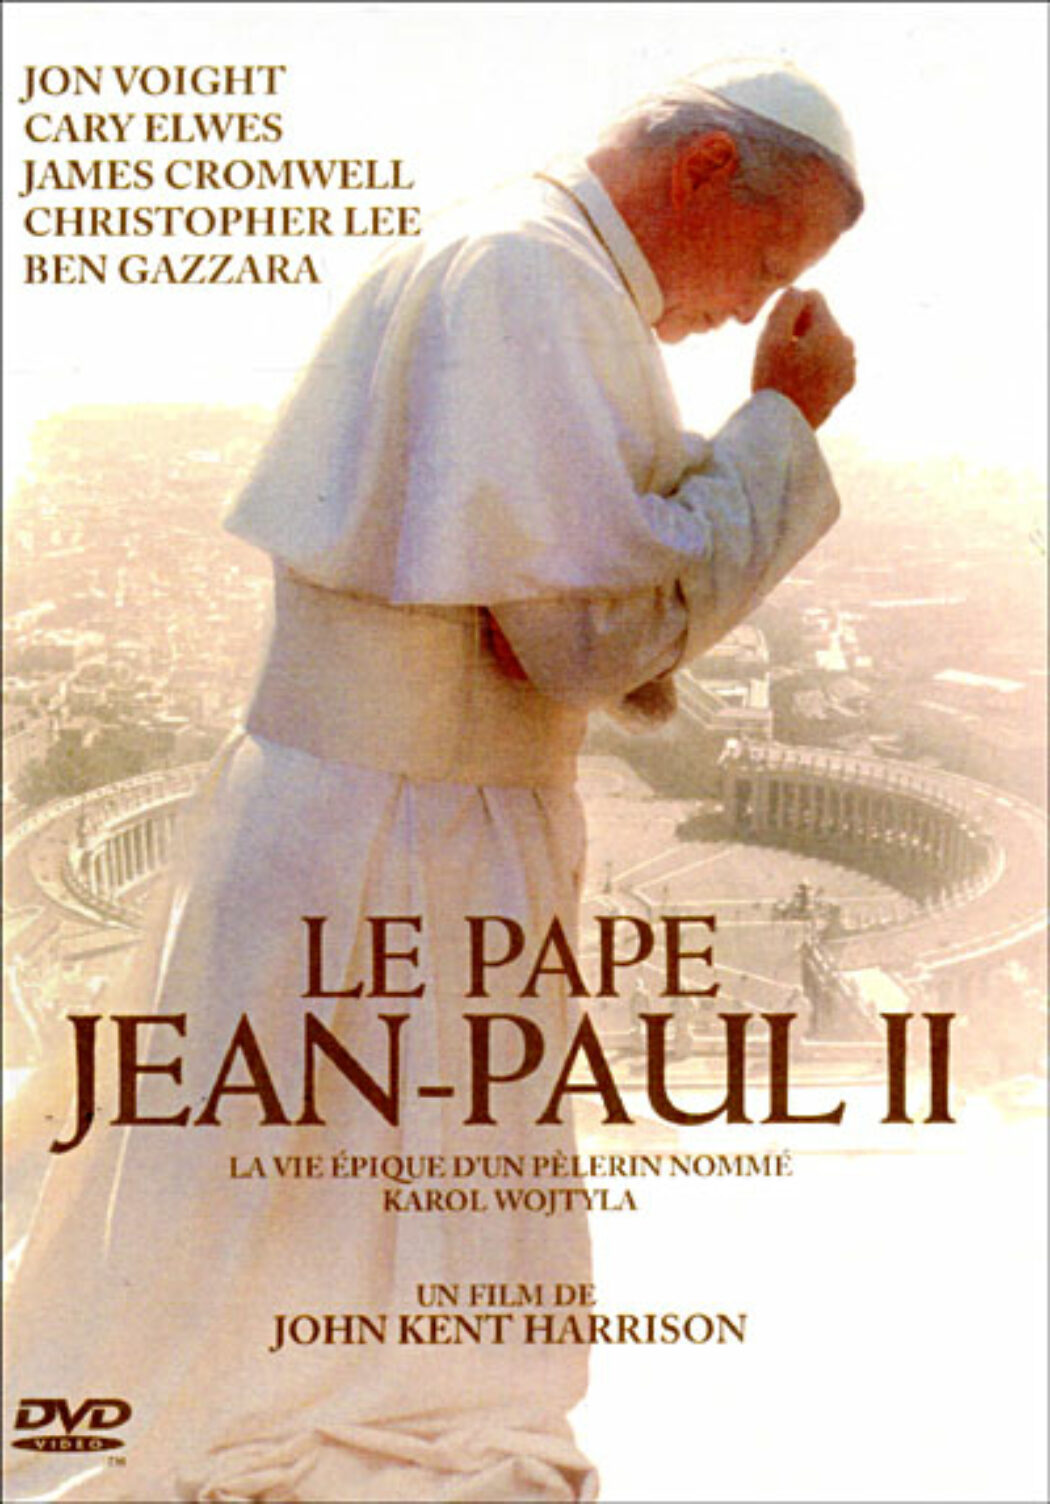 C8 va diffuser le téléfilm en 2 épisodes sur Jean-Paul II